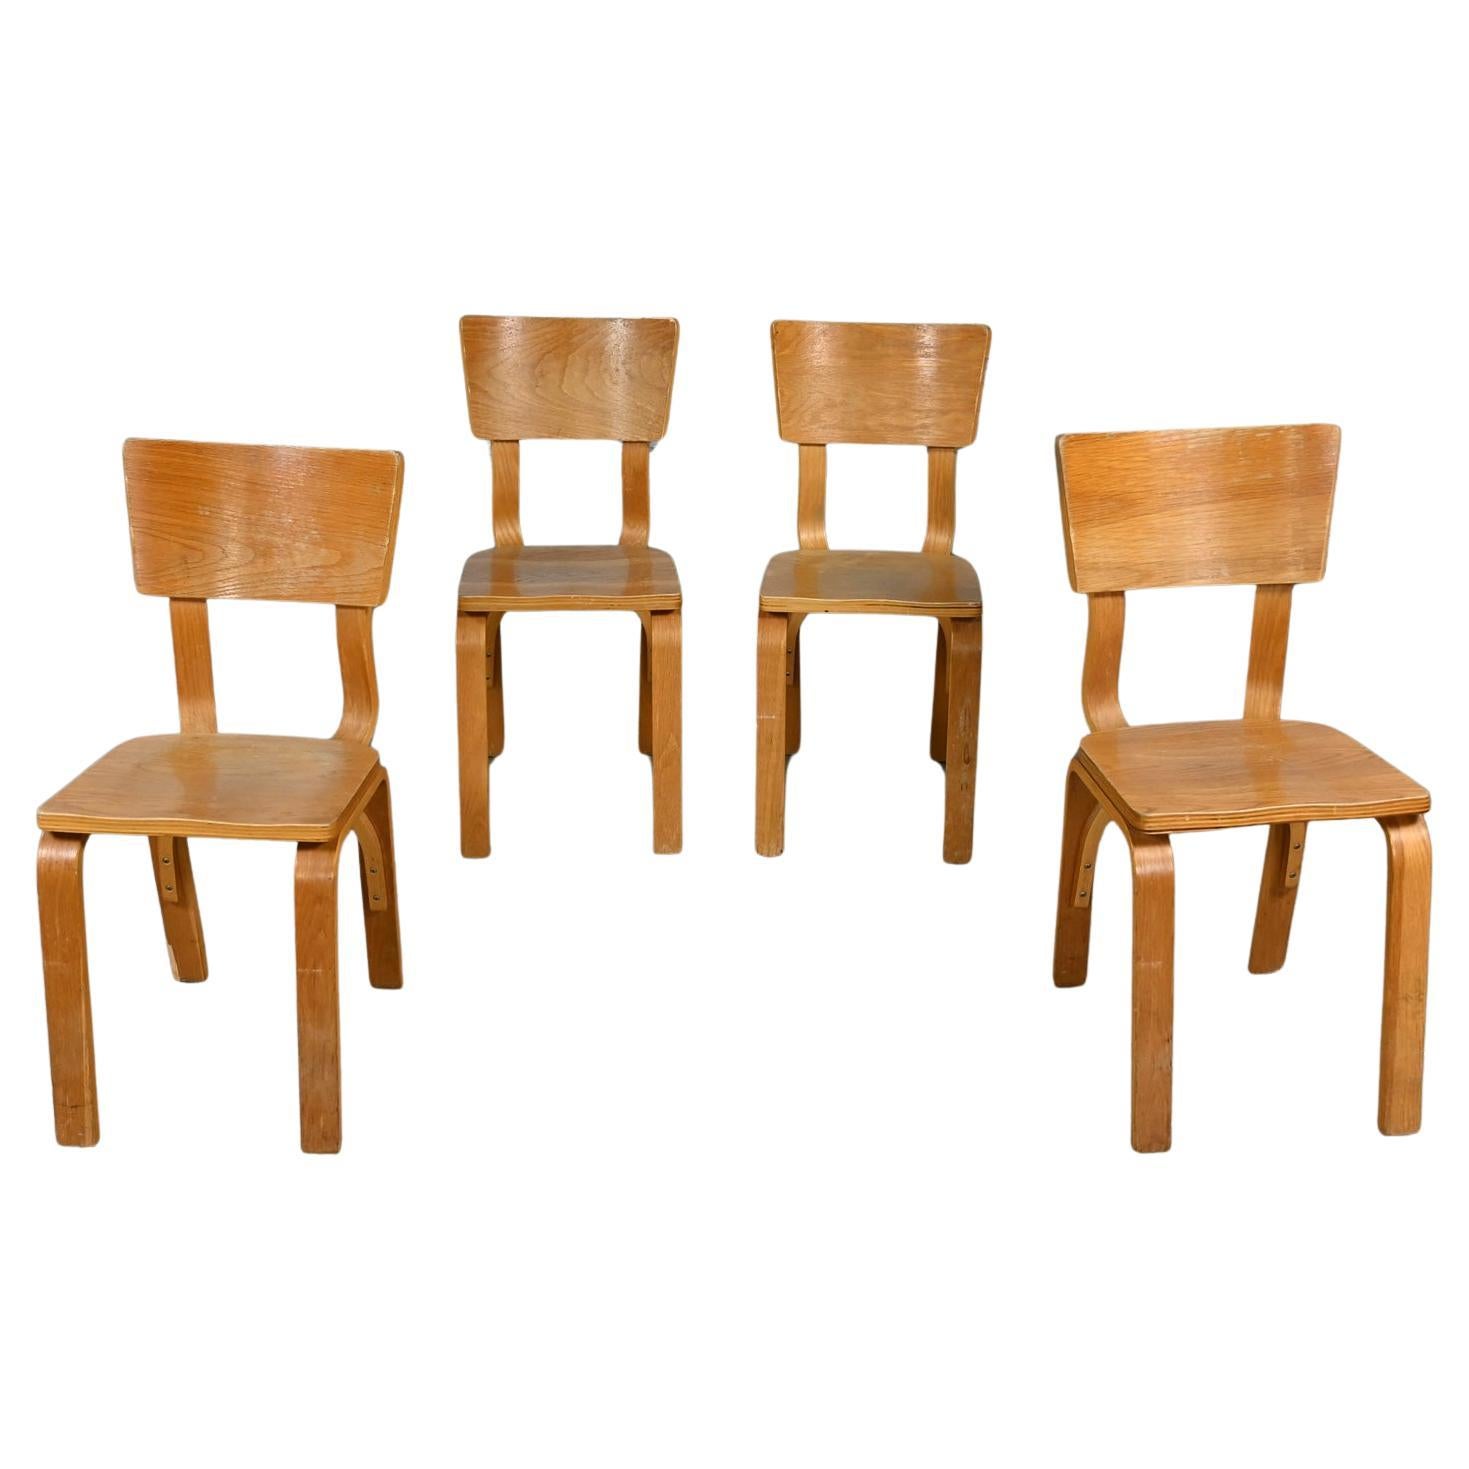 Satz von 4 MCM Thonet #1216 Esszimmerstühlen, gebogene Eiche, Sperrholz, Sattelsitz, Einzelschleife